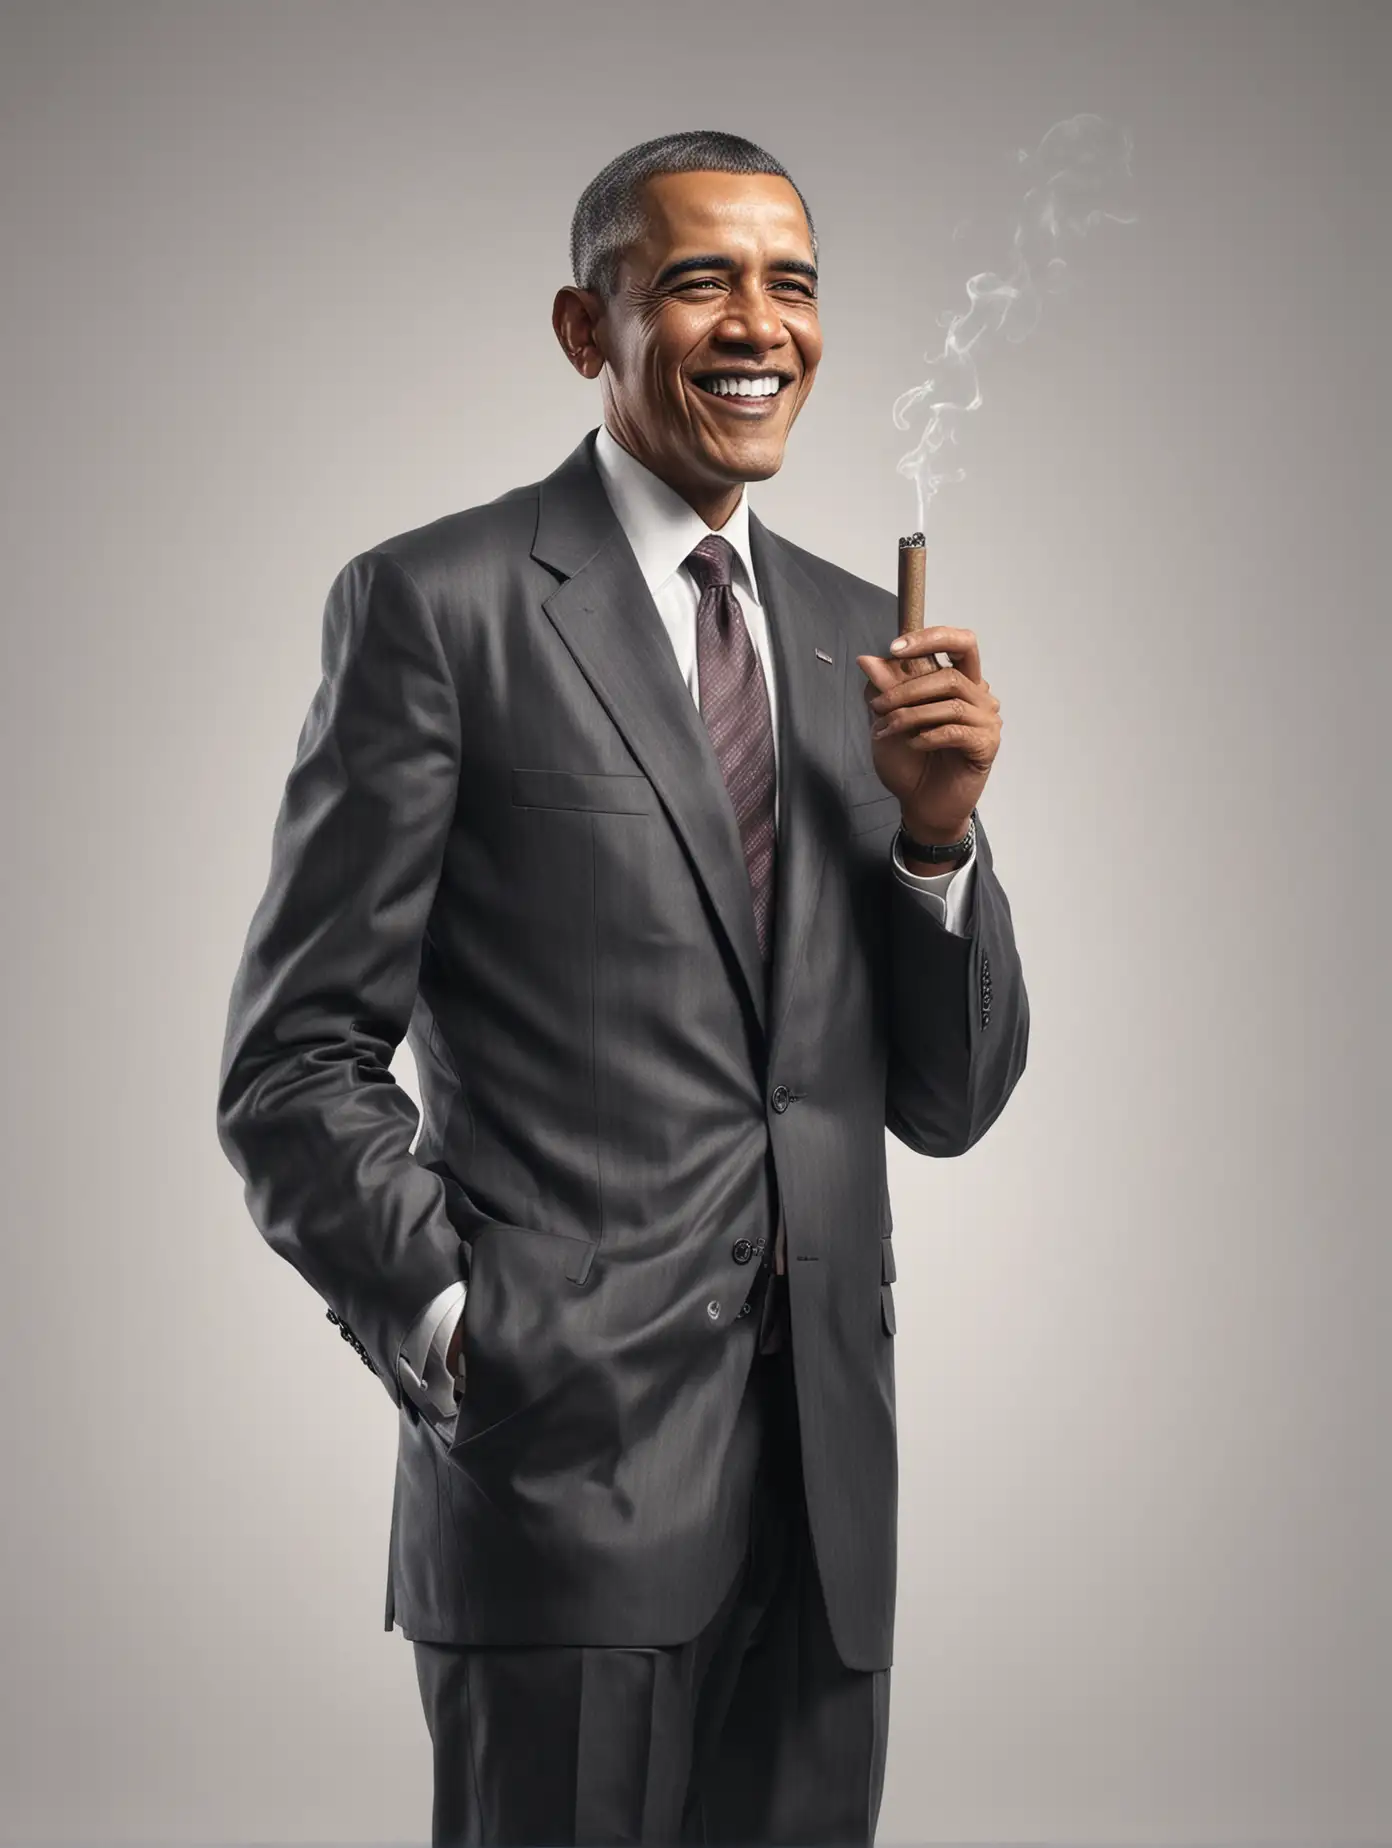 Barack Obama Smoking Cigar Realistic Portrait on White Background